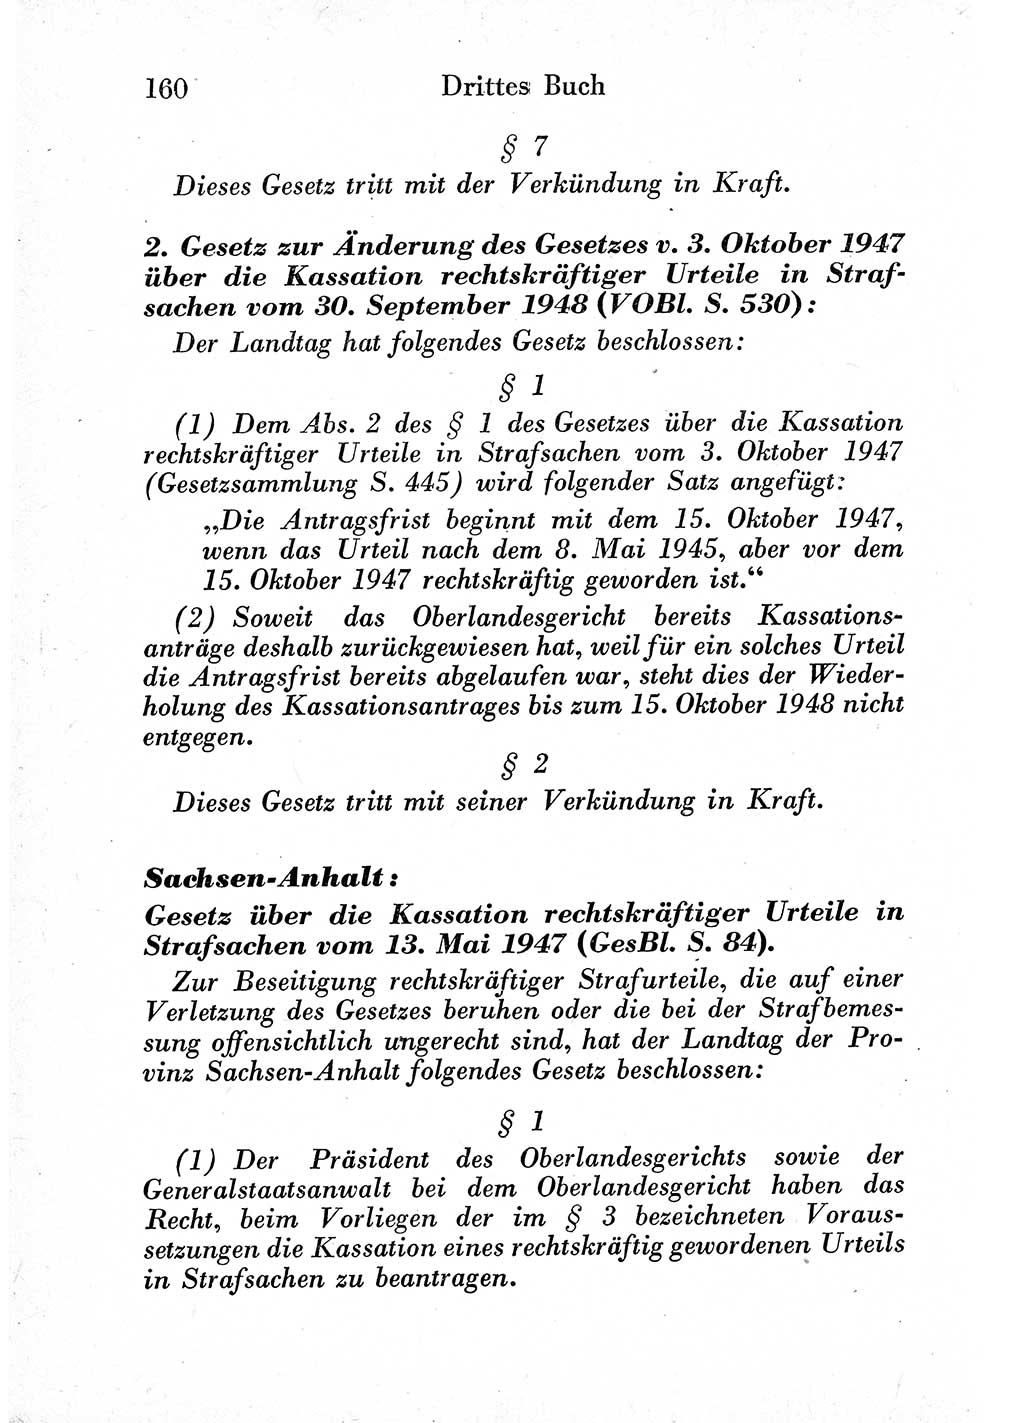 Strafprozeßordnung (StPO), Gerichtsverfassungsgesetz (GVG) und zahlreiche Nebengesetze der sowjetischen Besatzungszone (SBZ) in Deutschland 1949, Seite 160 (StPO GVG Ges. SBZ Dtl. 1949, S. 160)